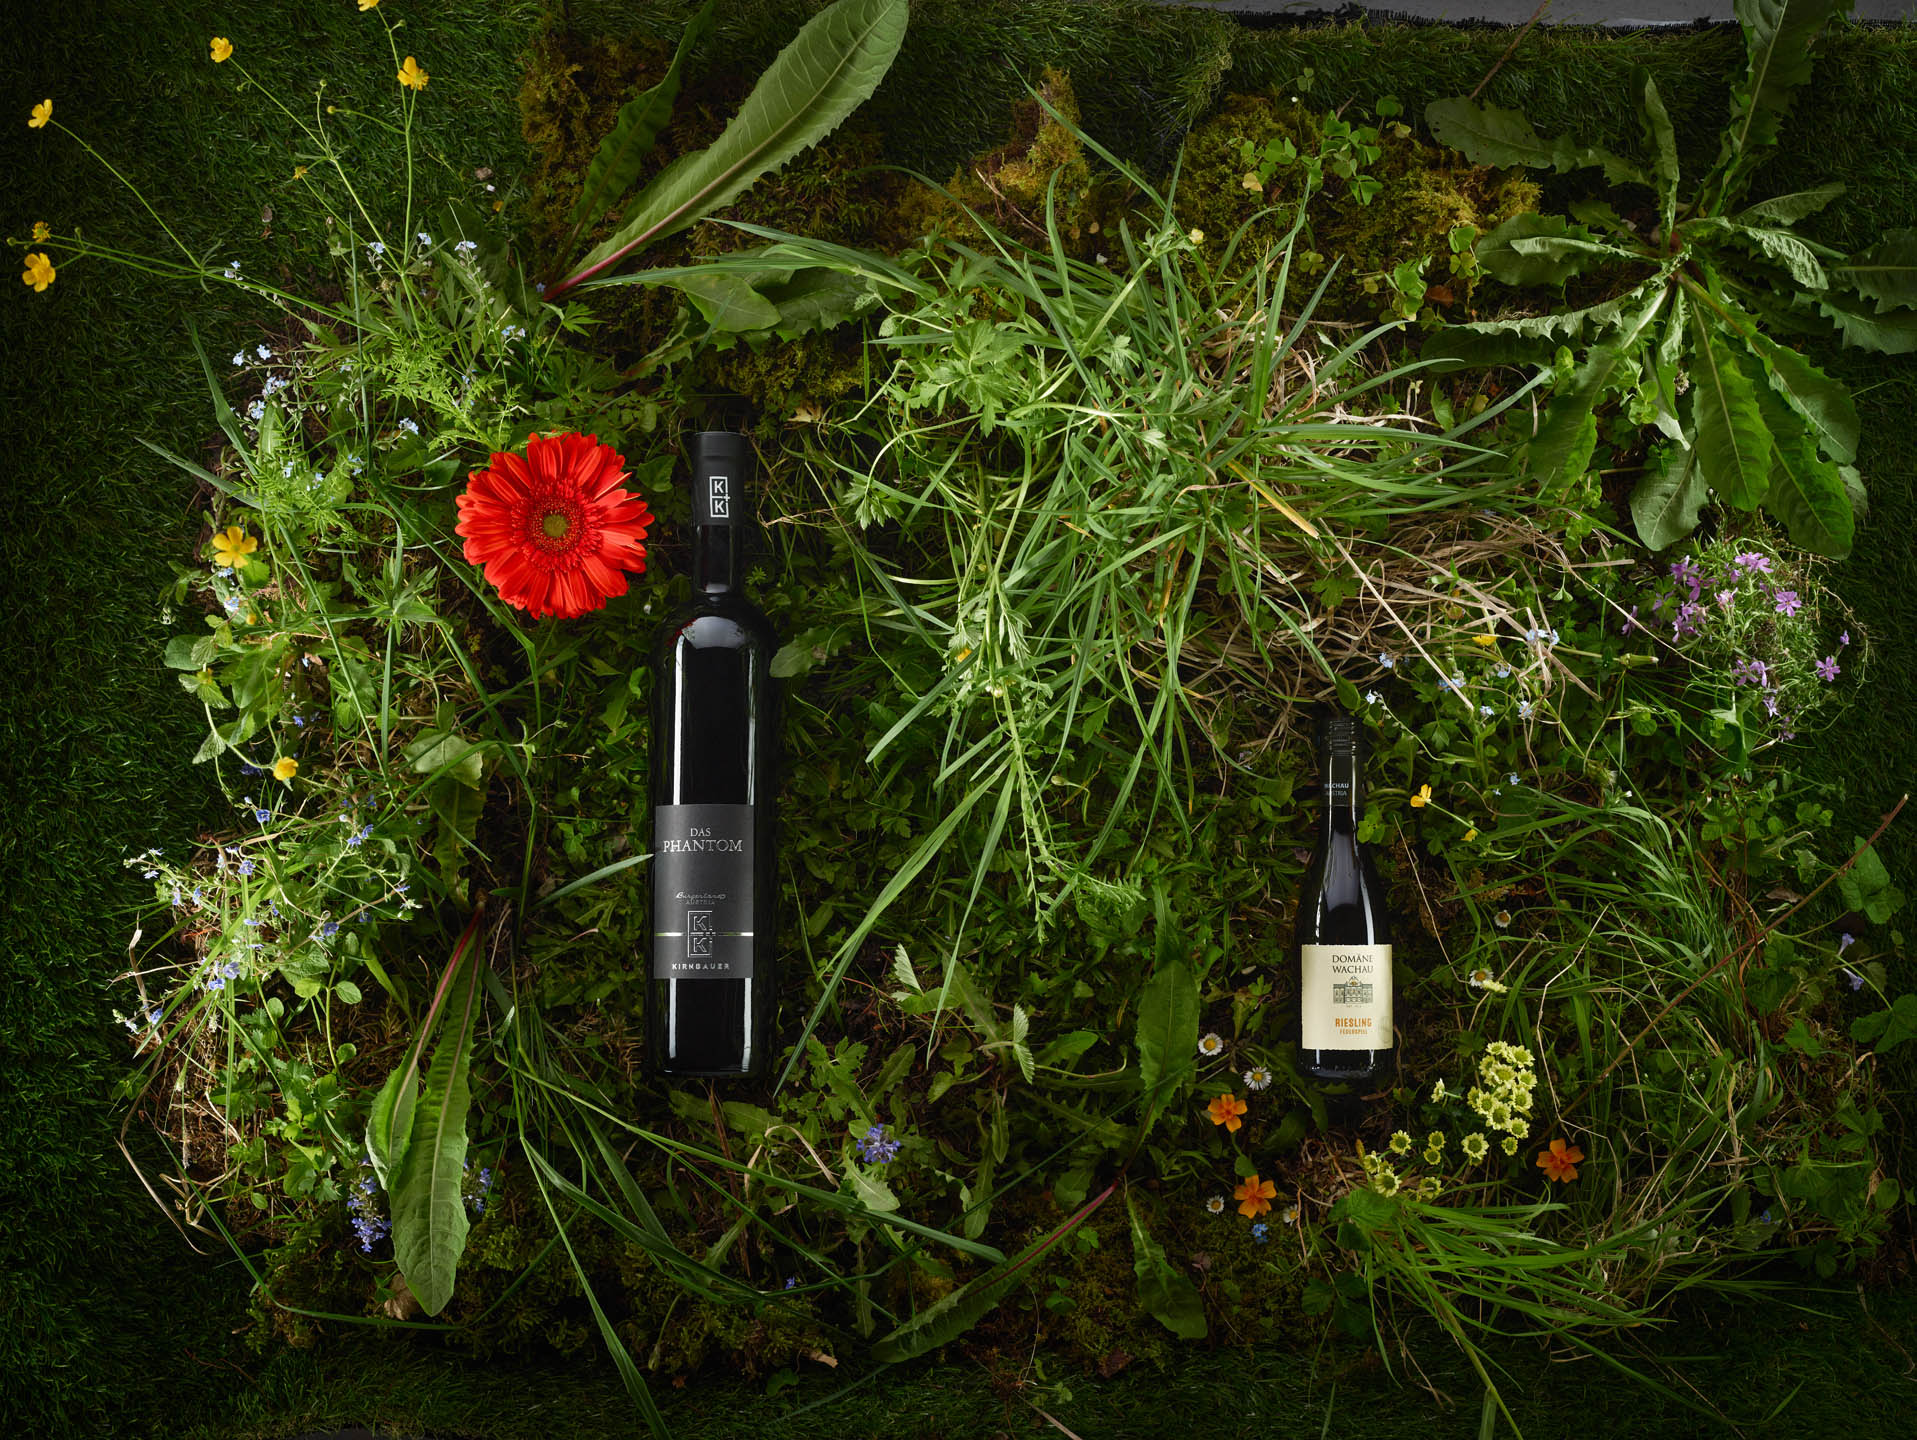 Weinflaschen im Gras und Moos